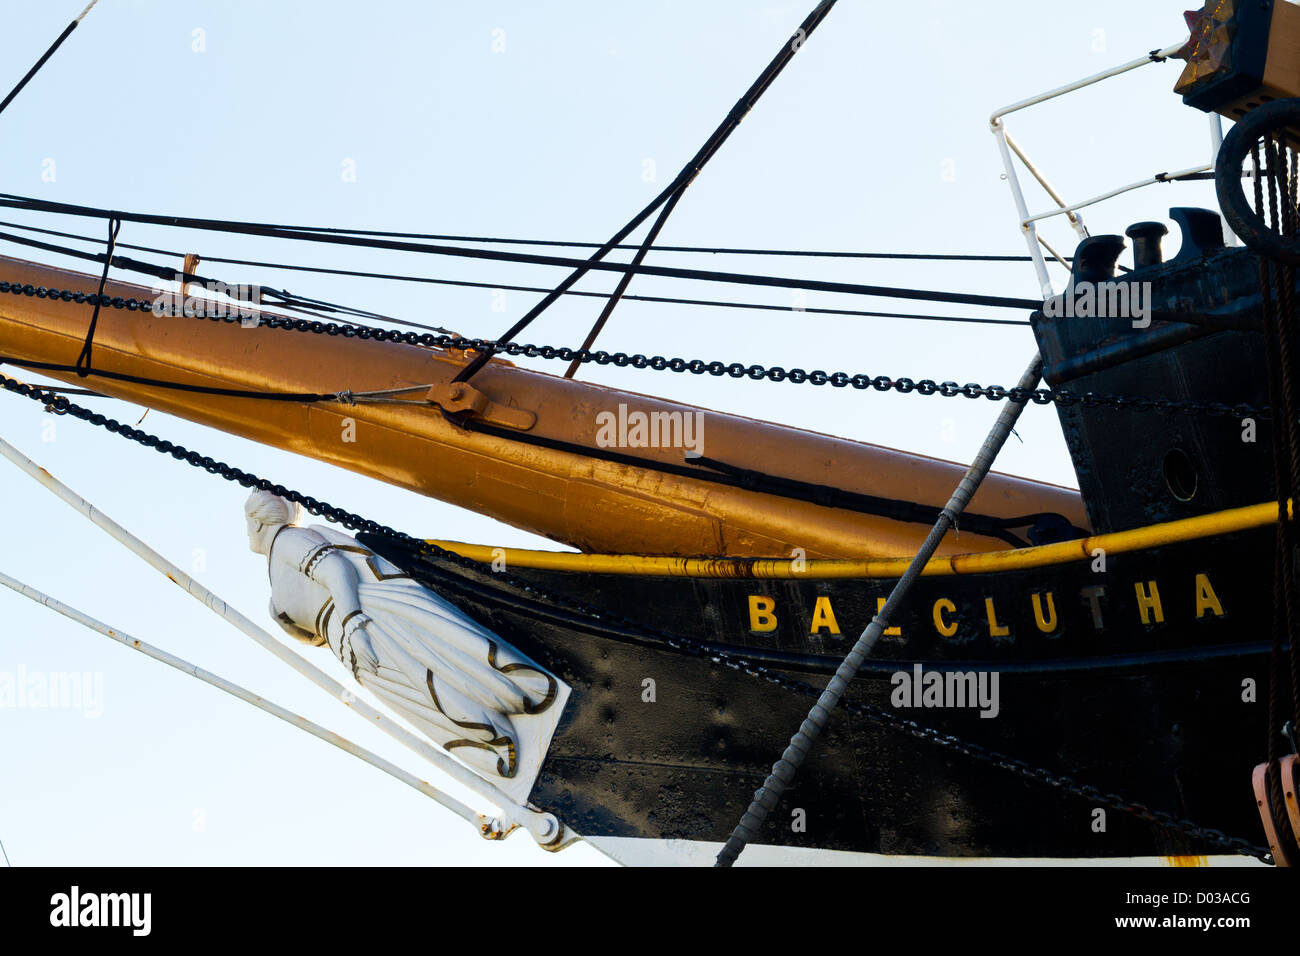 Le navire à voile à Balclutha est amarré à la Marina de San Francisco, Californie Banque D'Images